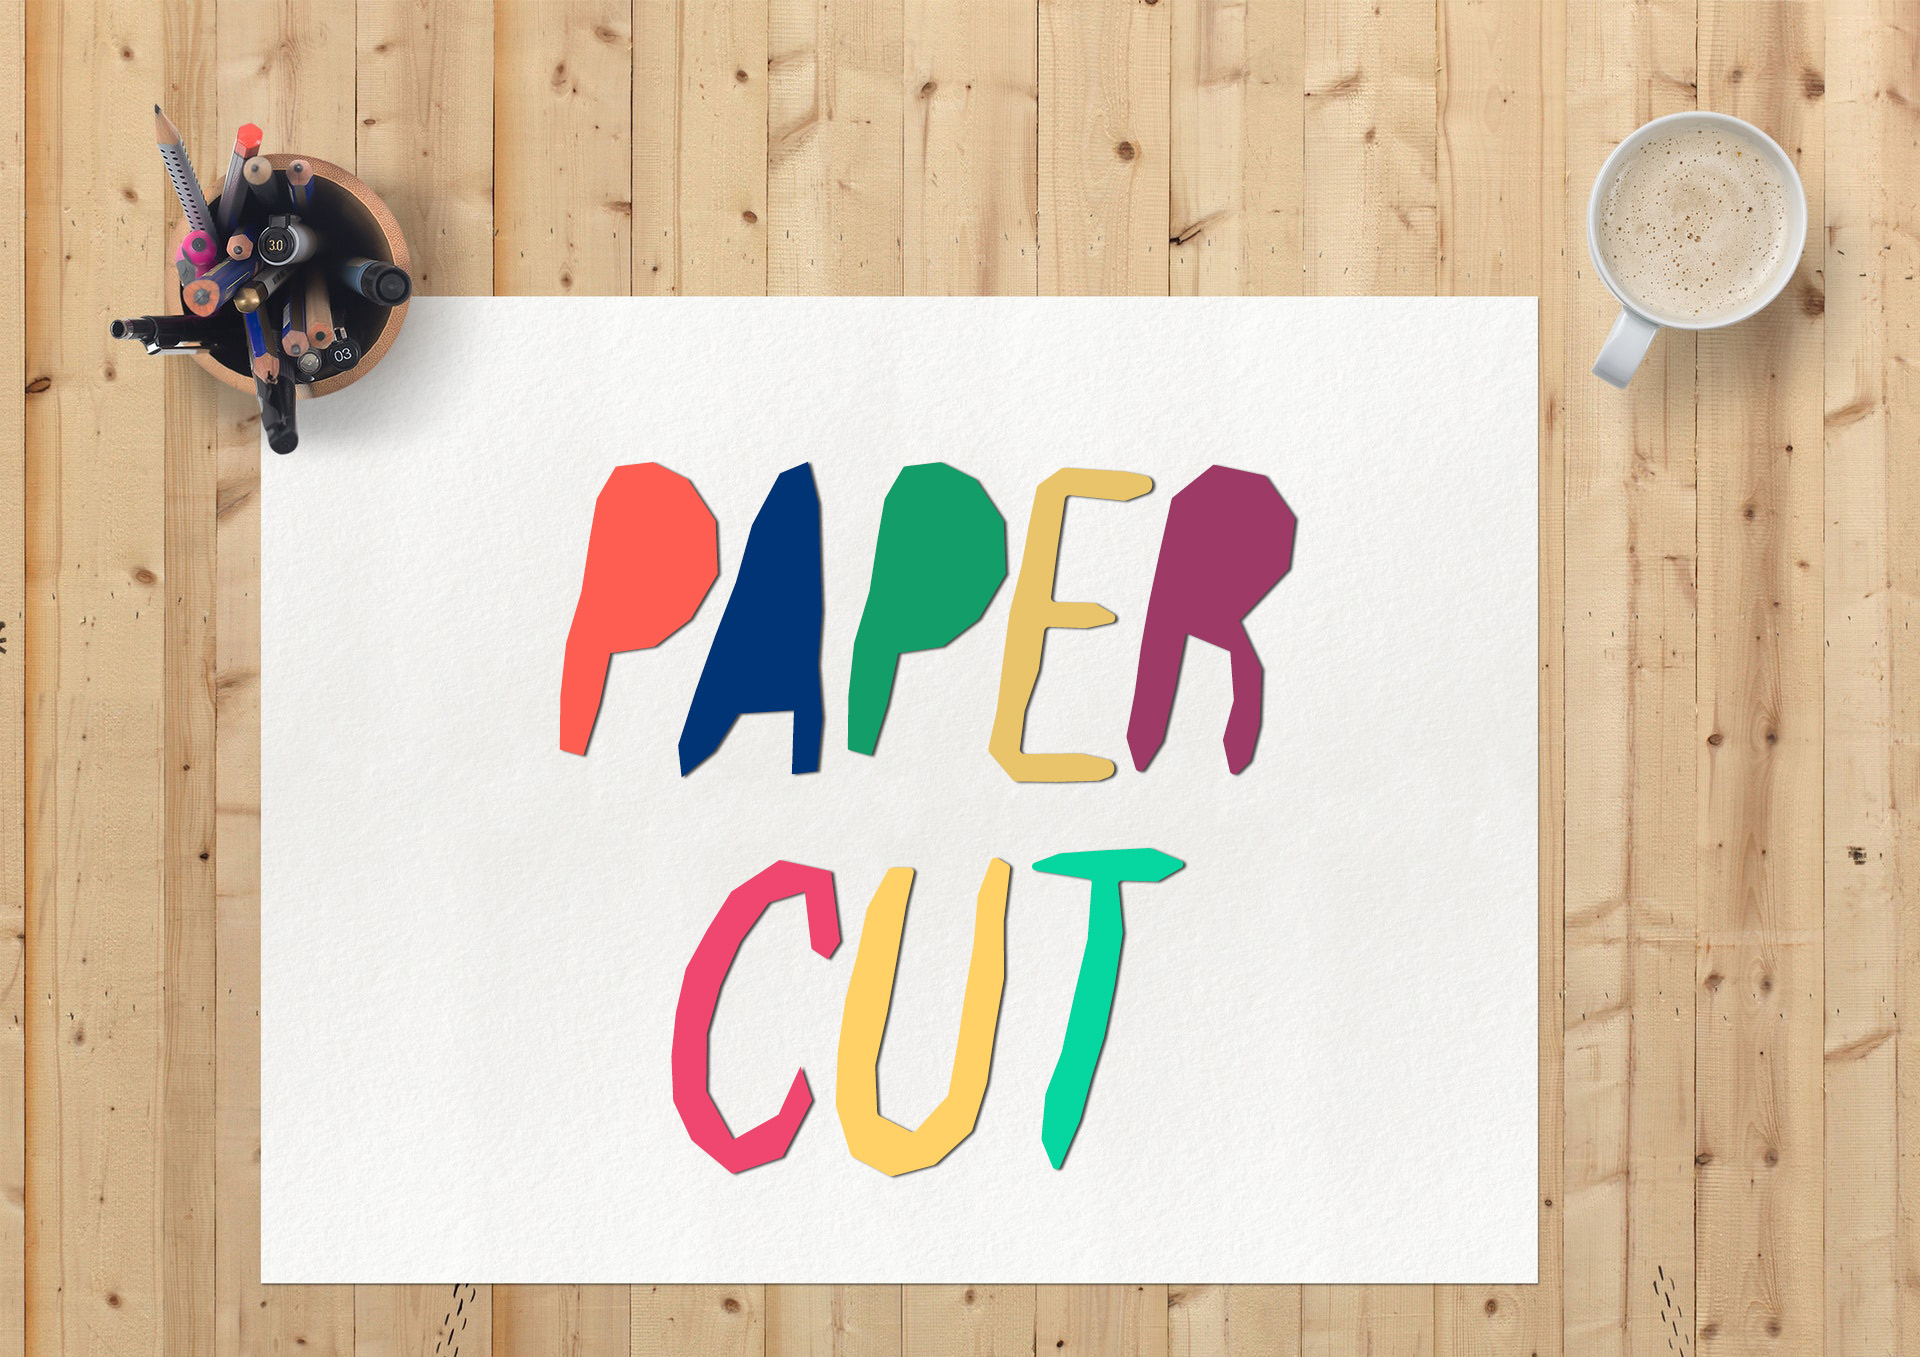 Paper Cut